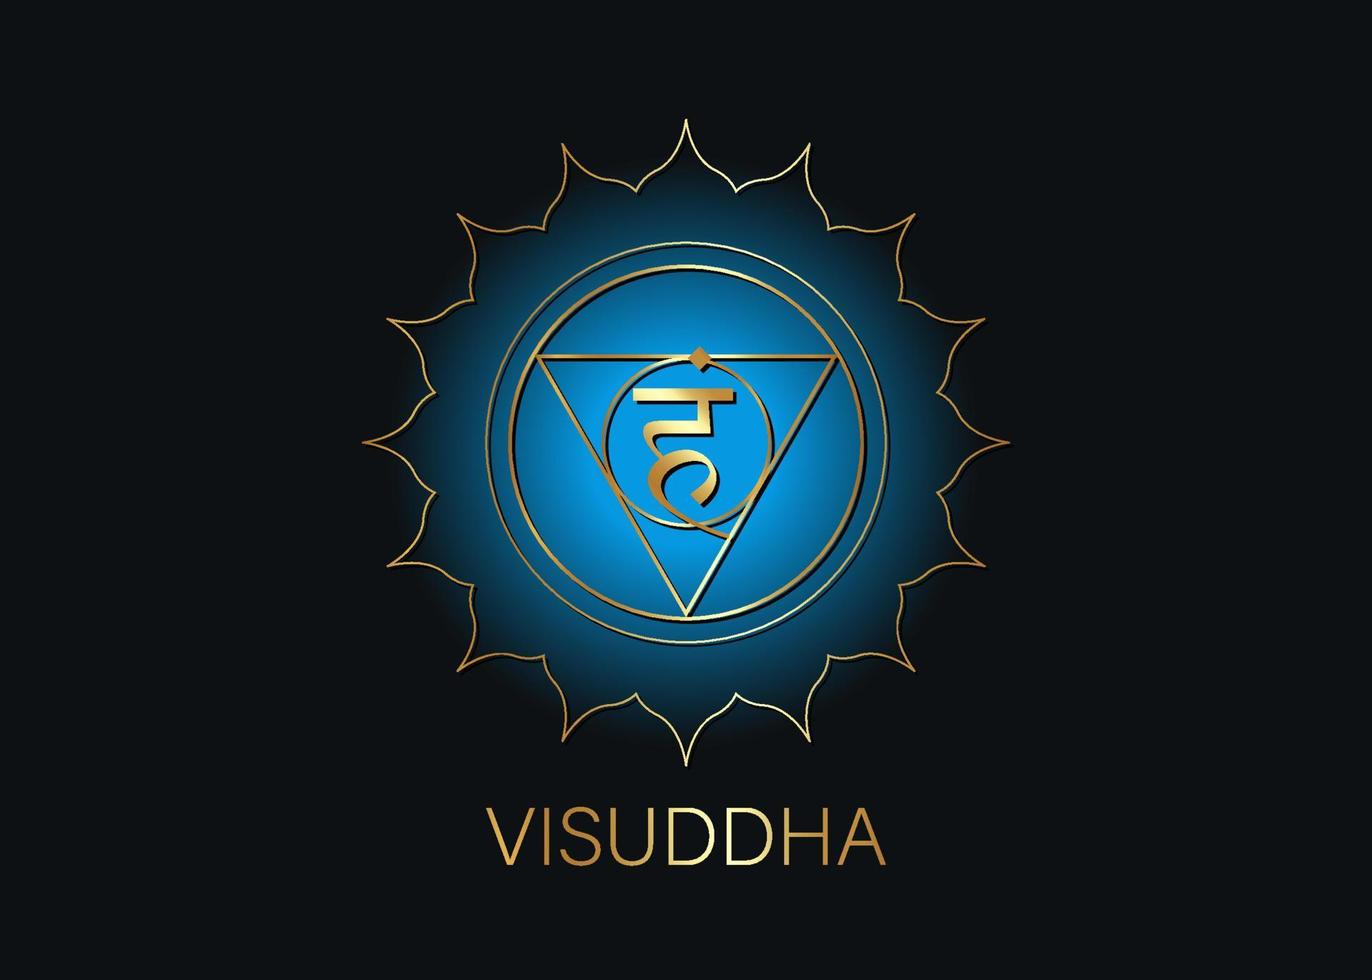 quinto chakra della gola visuddha con il mantra seme sanscrito indù vam. simbolo di stile design piatto blu e oro per la meditazione, lo yoga. logo rotondo modello vettoriale isolato su sfondo nero